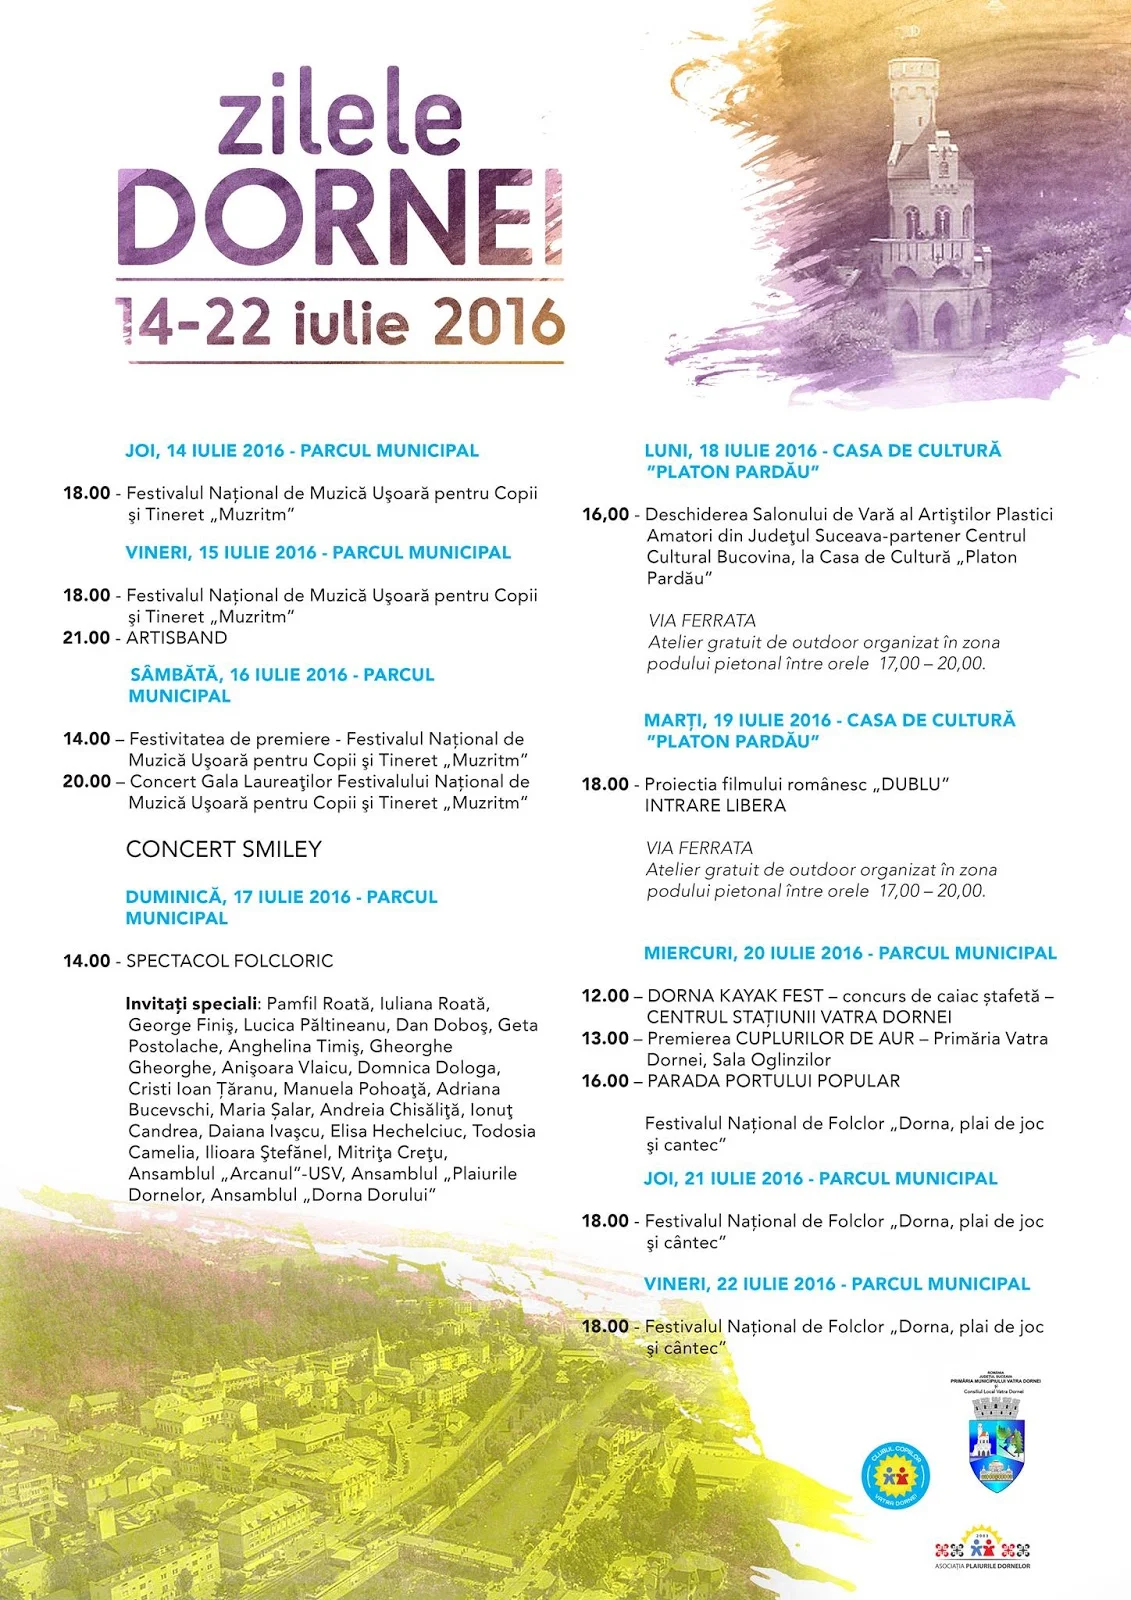 Zilele Dornei, 14-22 iulie 2016. Programul evenimentelor